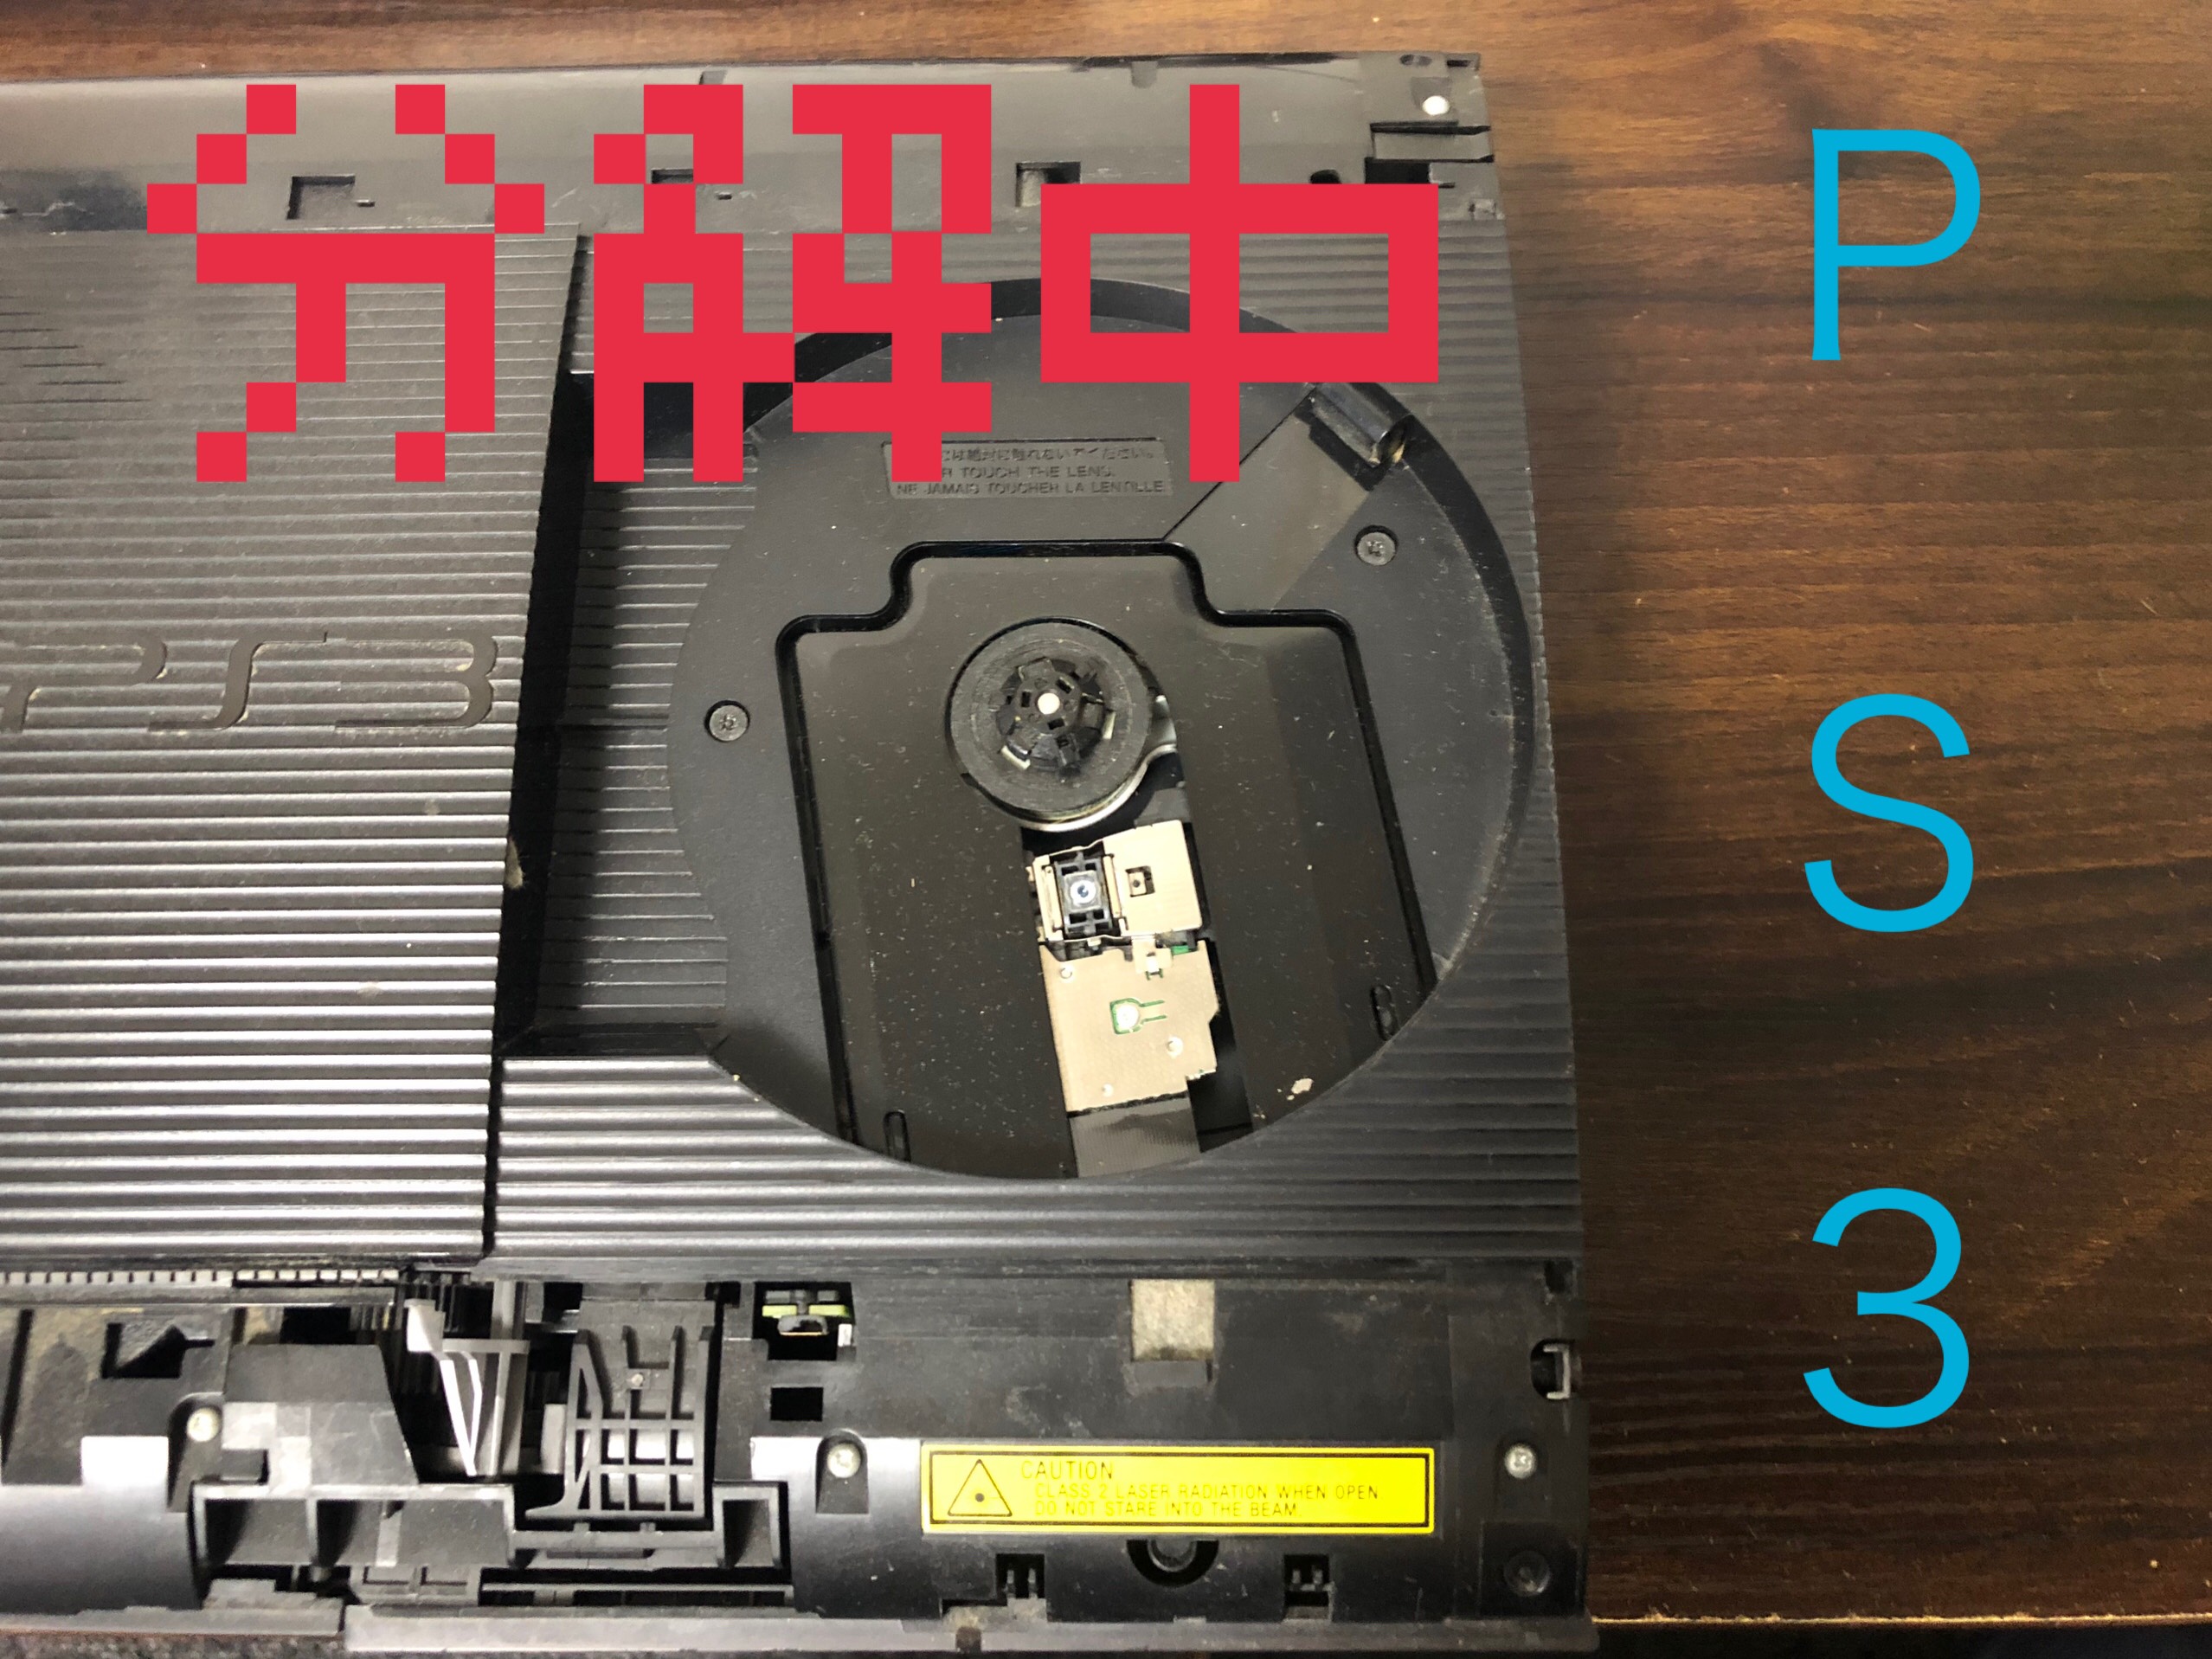 異音 起動のしない時のps３修理内容 Nintendo3ds Switch Psp 修理のゲームホスピタル Nintendo3ds ニンテンドーds Psp 修理